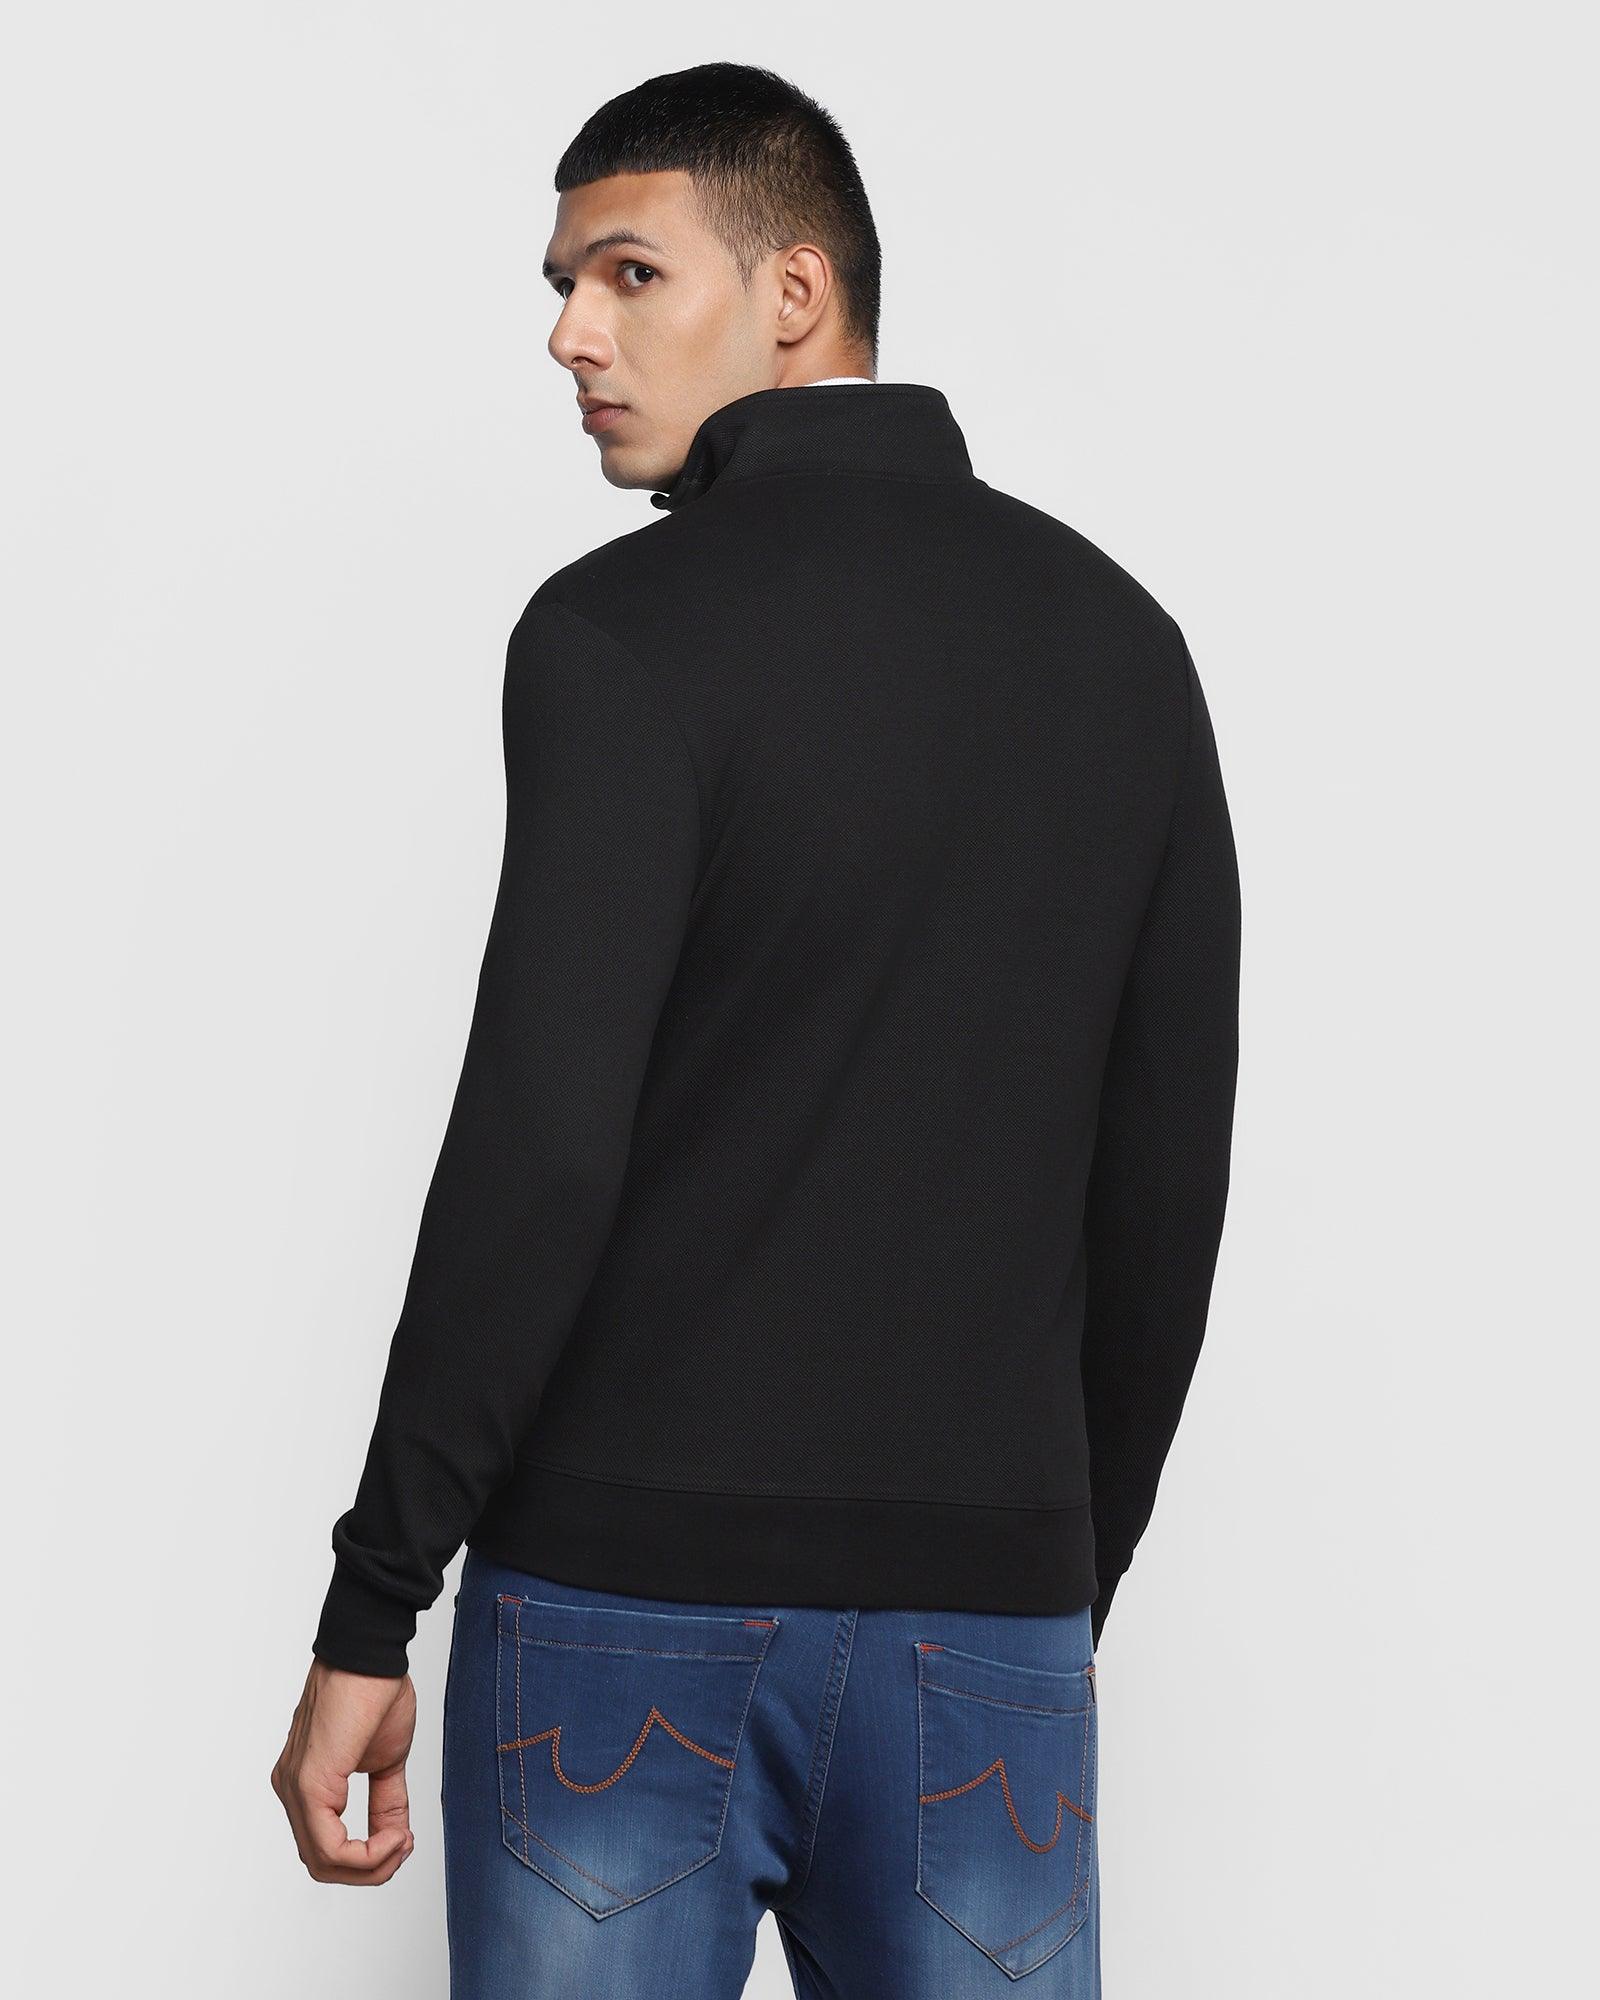 Stylized Collar Black Solid Sweatshirt - Lich